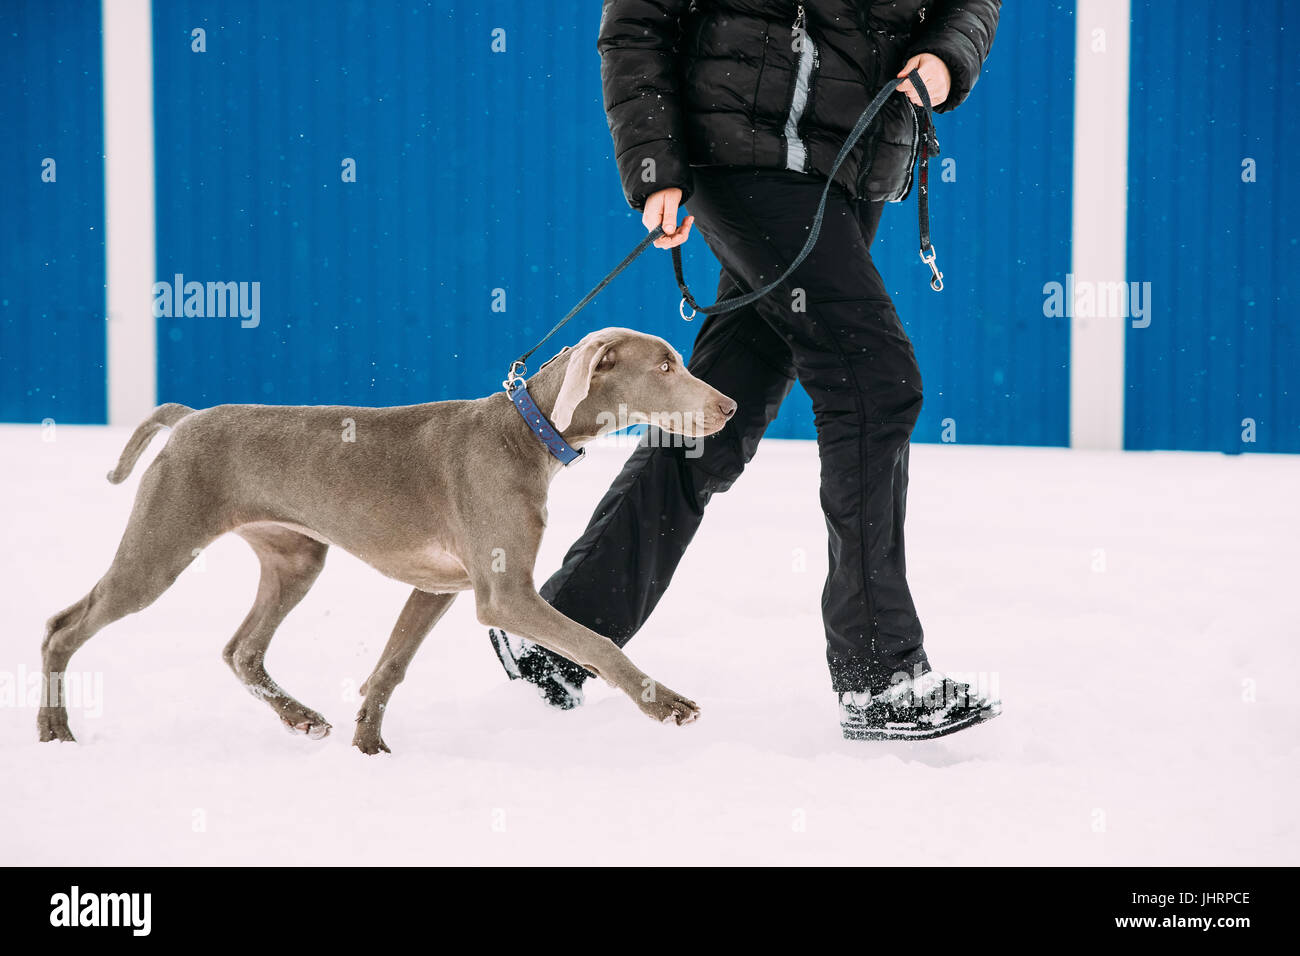 Weimaraner-Hundewiesen in der Nähe von Menschen im Schnee am Wintertag. Großer Hund Nachzuchten für die Jagd. Die Weimaraner ist ein universell einsetzbares Jagdhund. Stockfoto